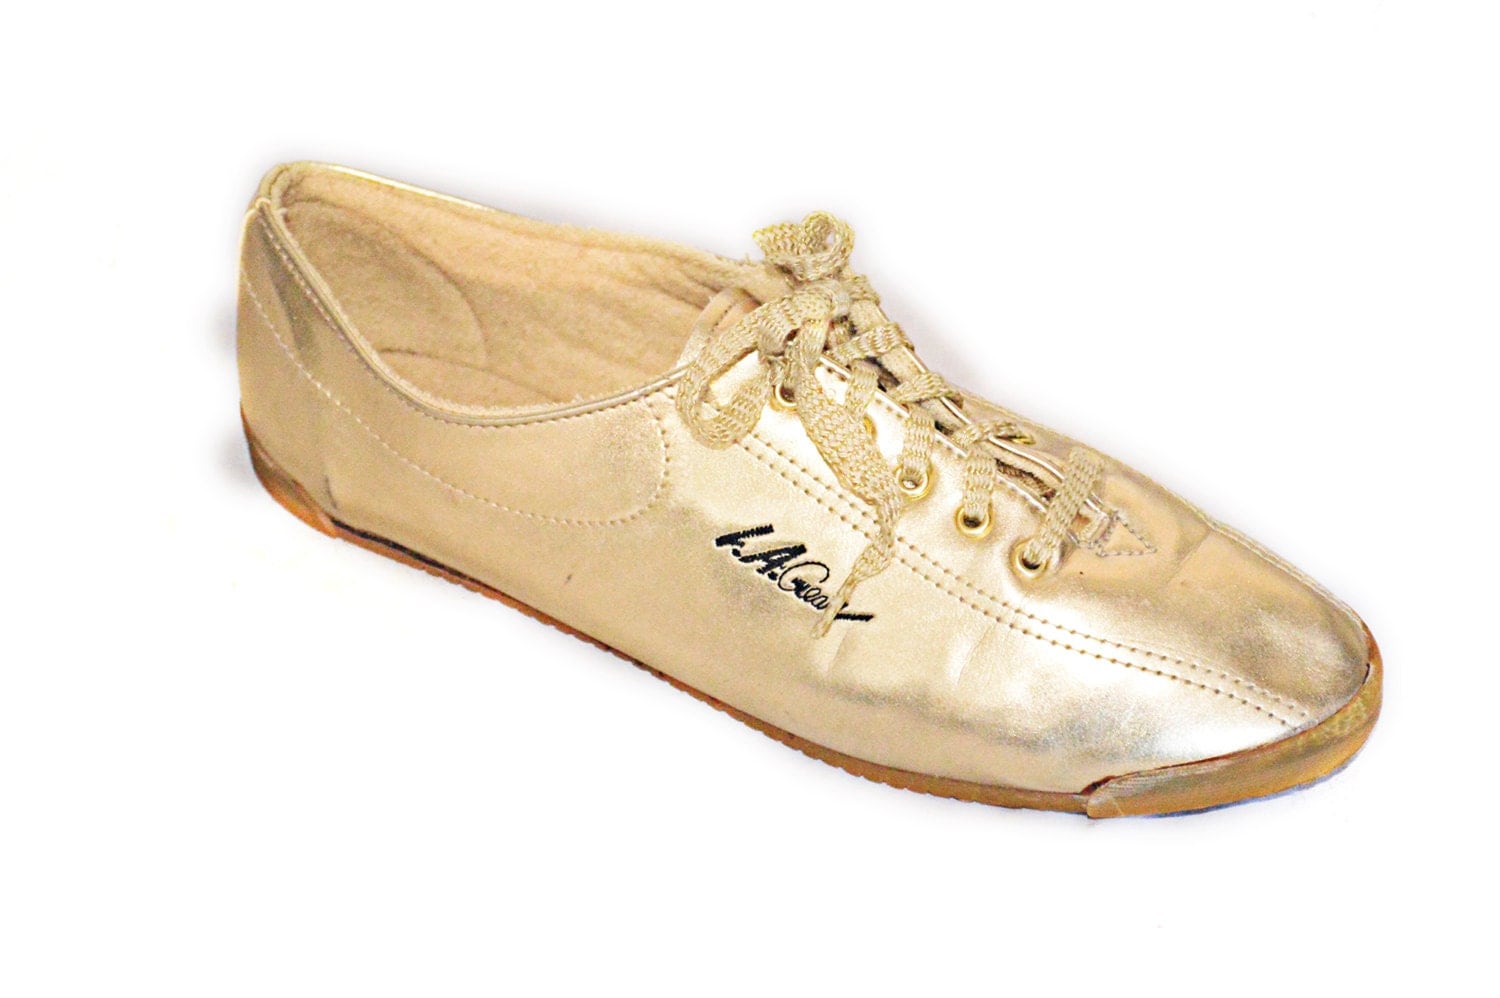 Vintage 90s Gold Metallic LA Gear Shoes Sneakers Tennis Shoes